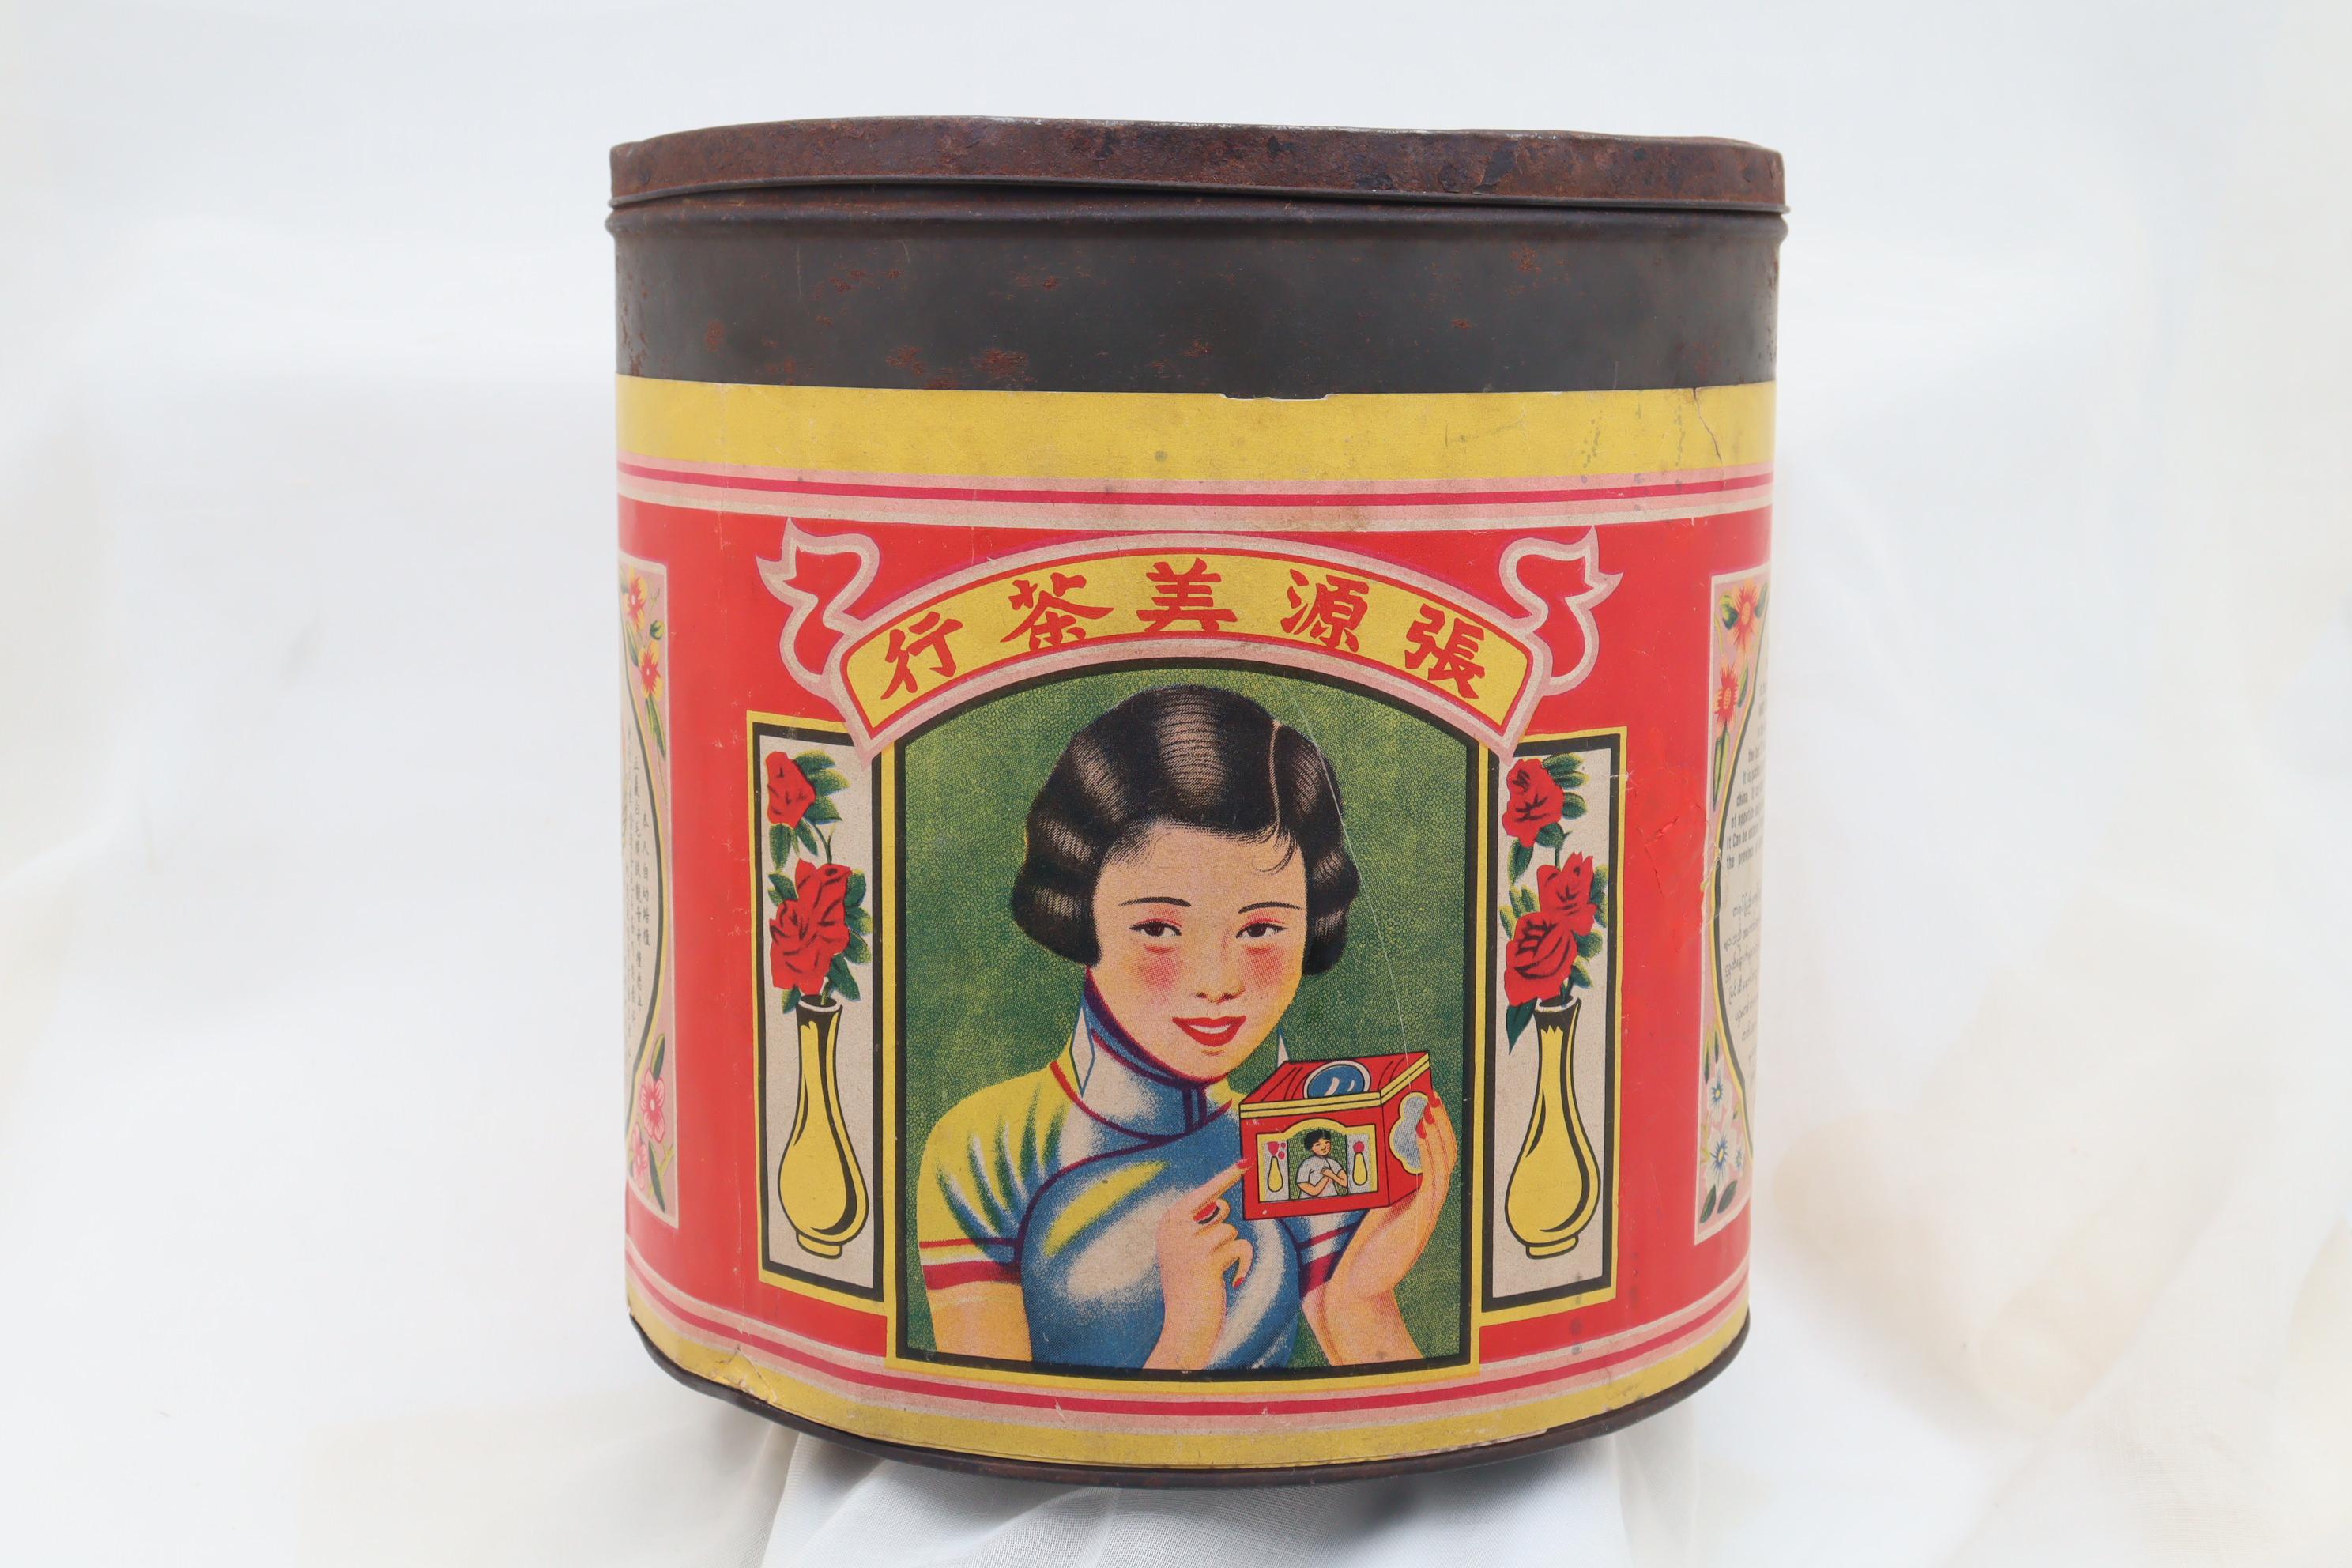 Cette boîte à thé très décorative a été fabriquée pour le marché birman et comporte des textes en chinois, en anglais et en birman. Il a été expédié d'Amoy (aujourd'hui Xiamem) en Chine pour être vendu dans le magasin de détail de Rangoon